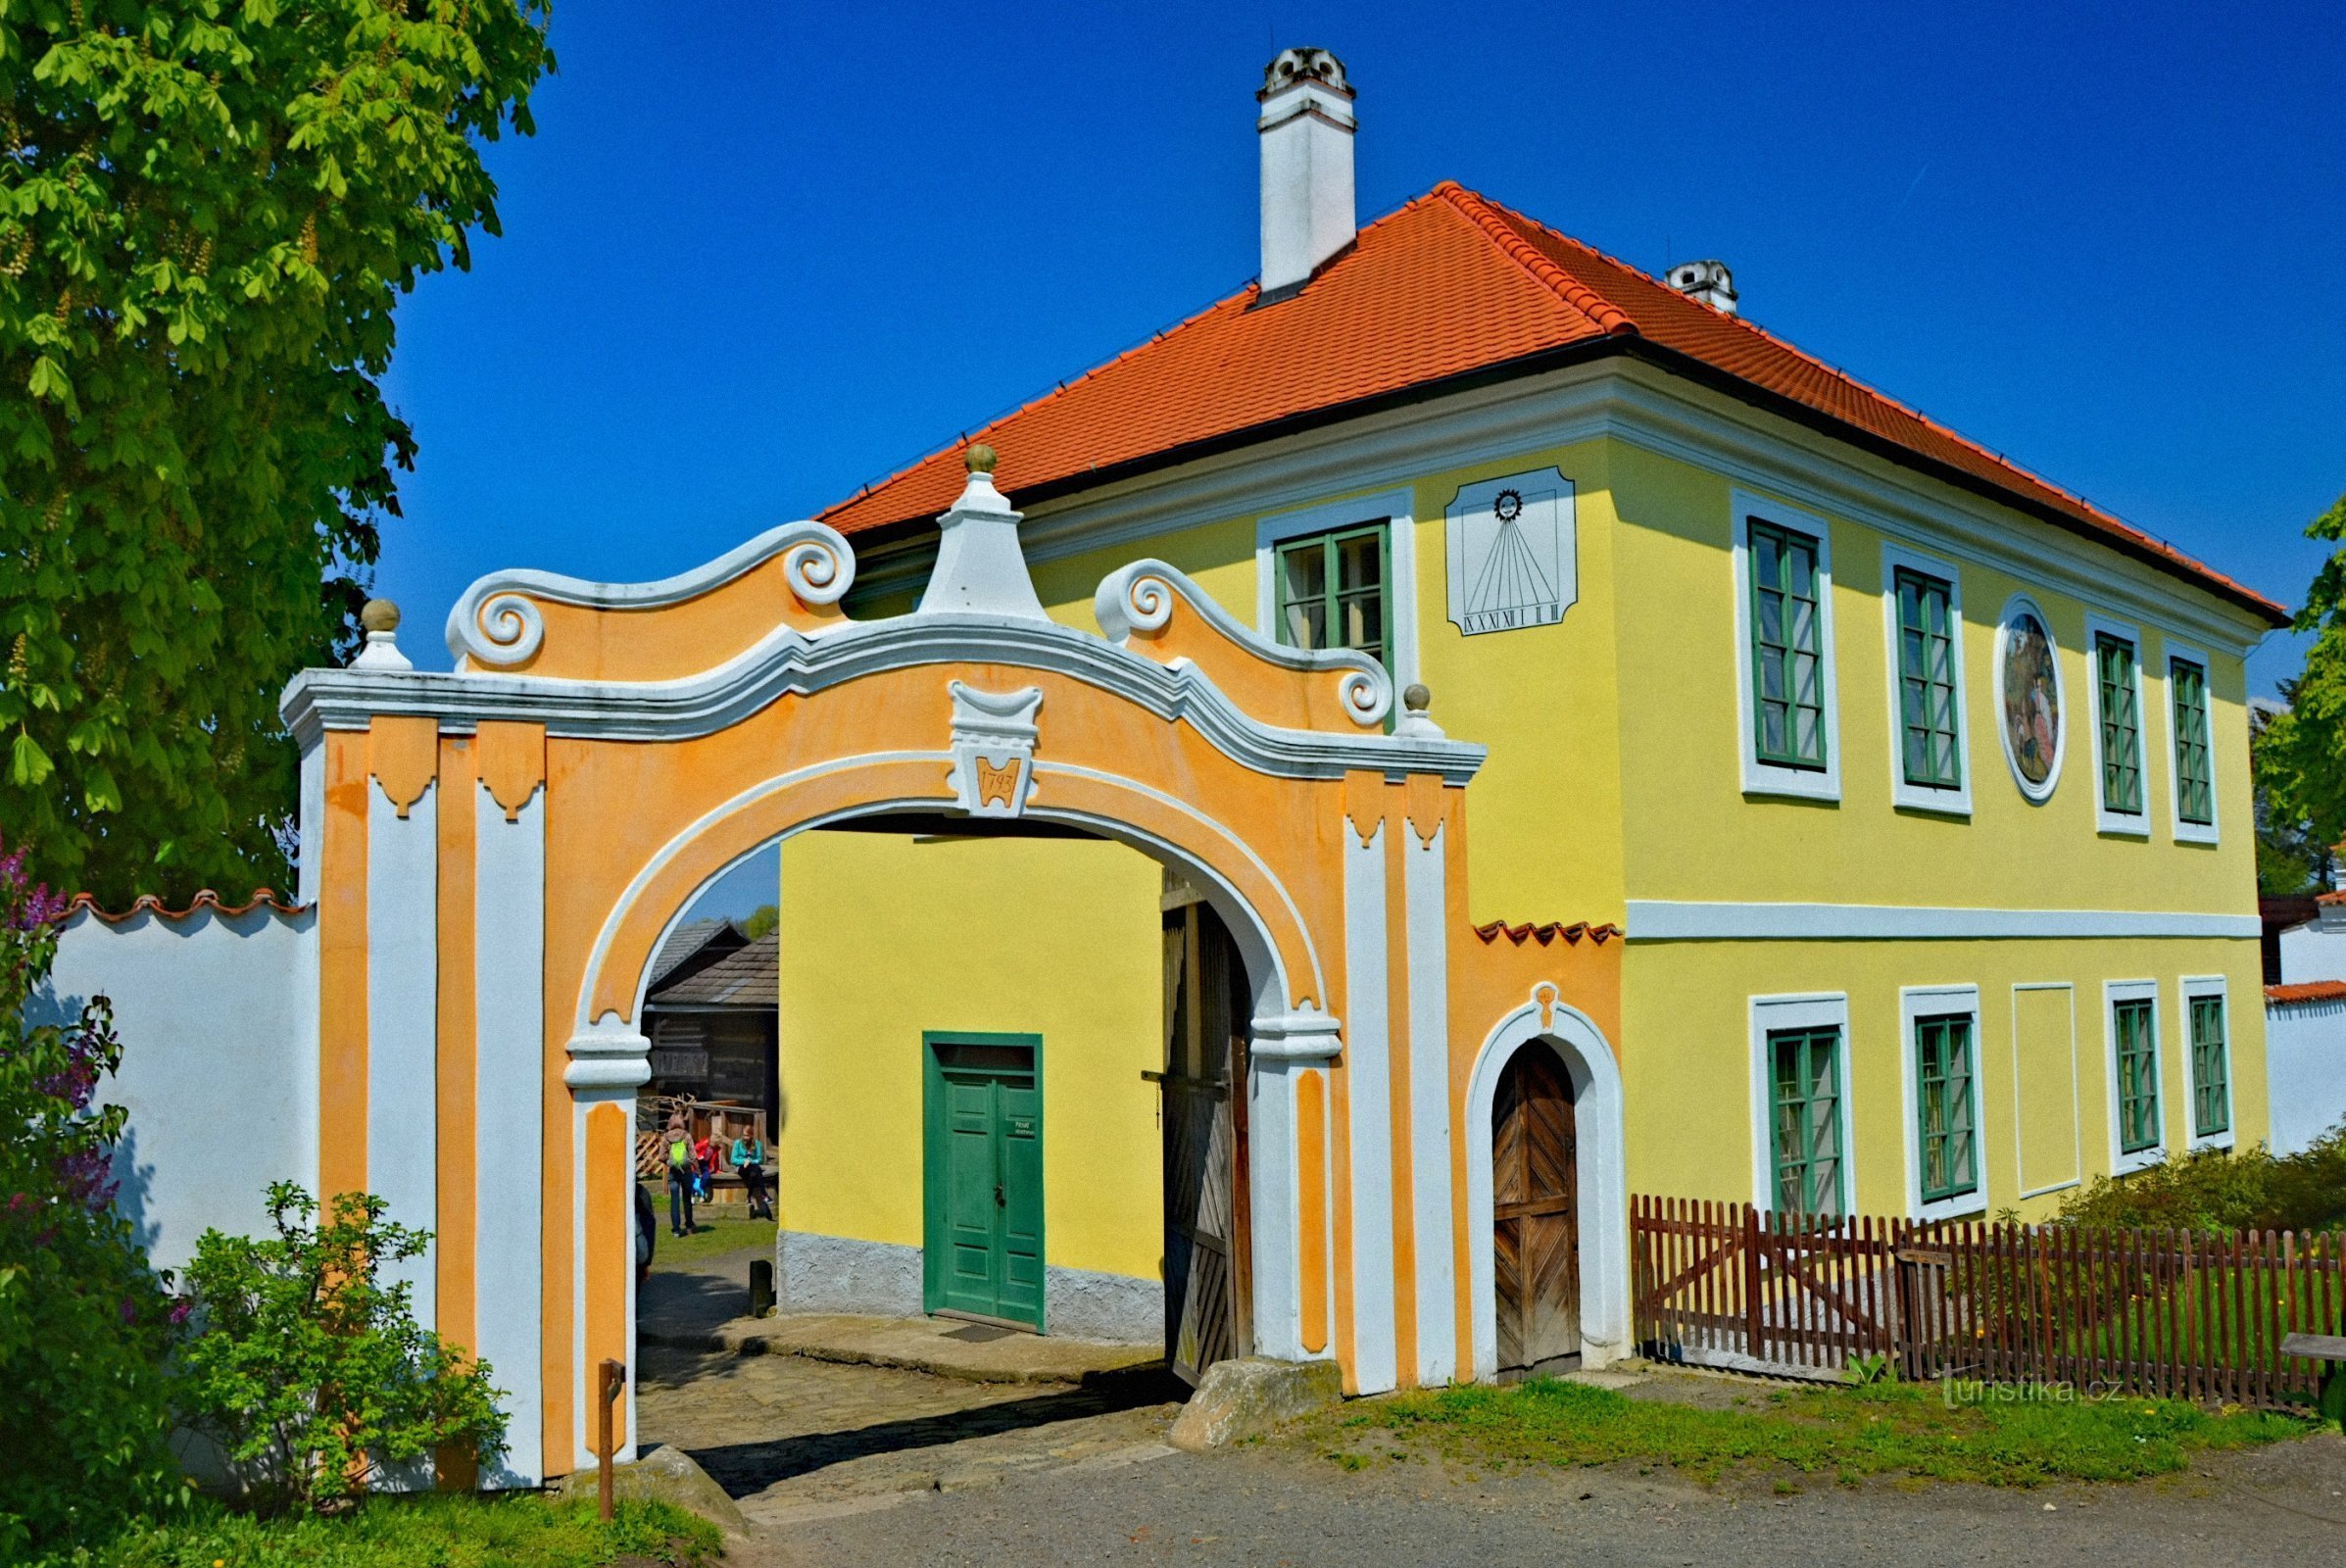 Polabsk etnografiske museum Přerov nad Labem